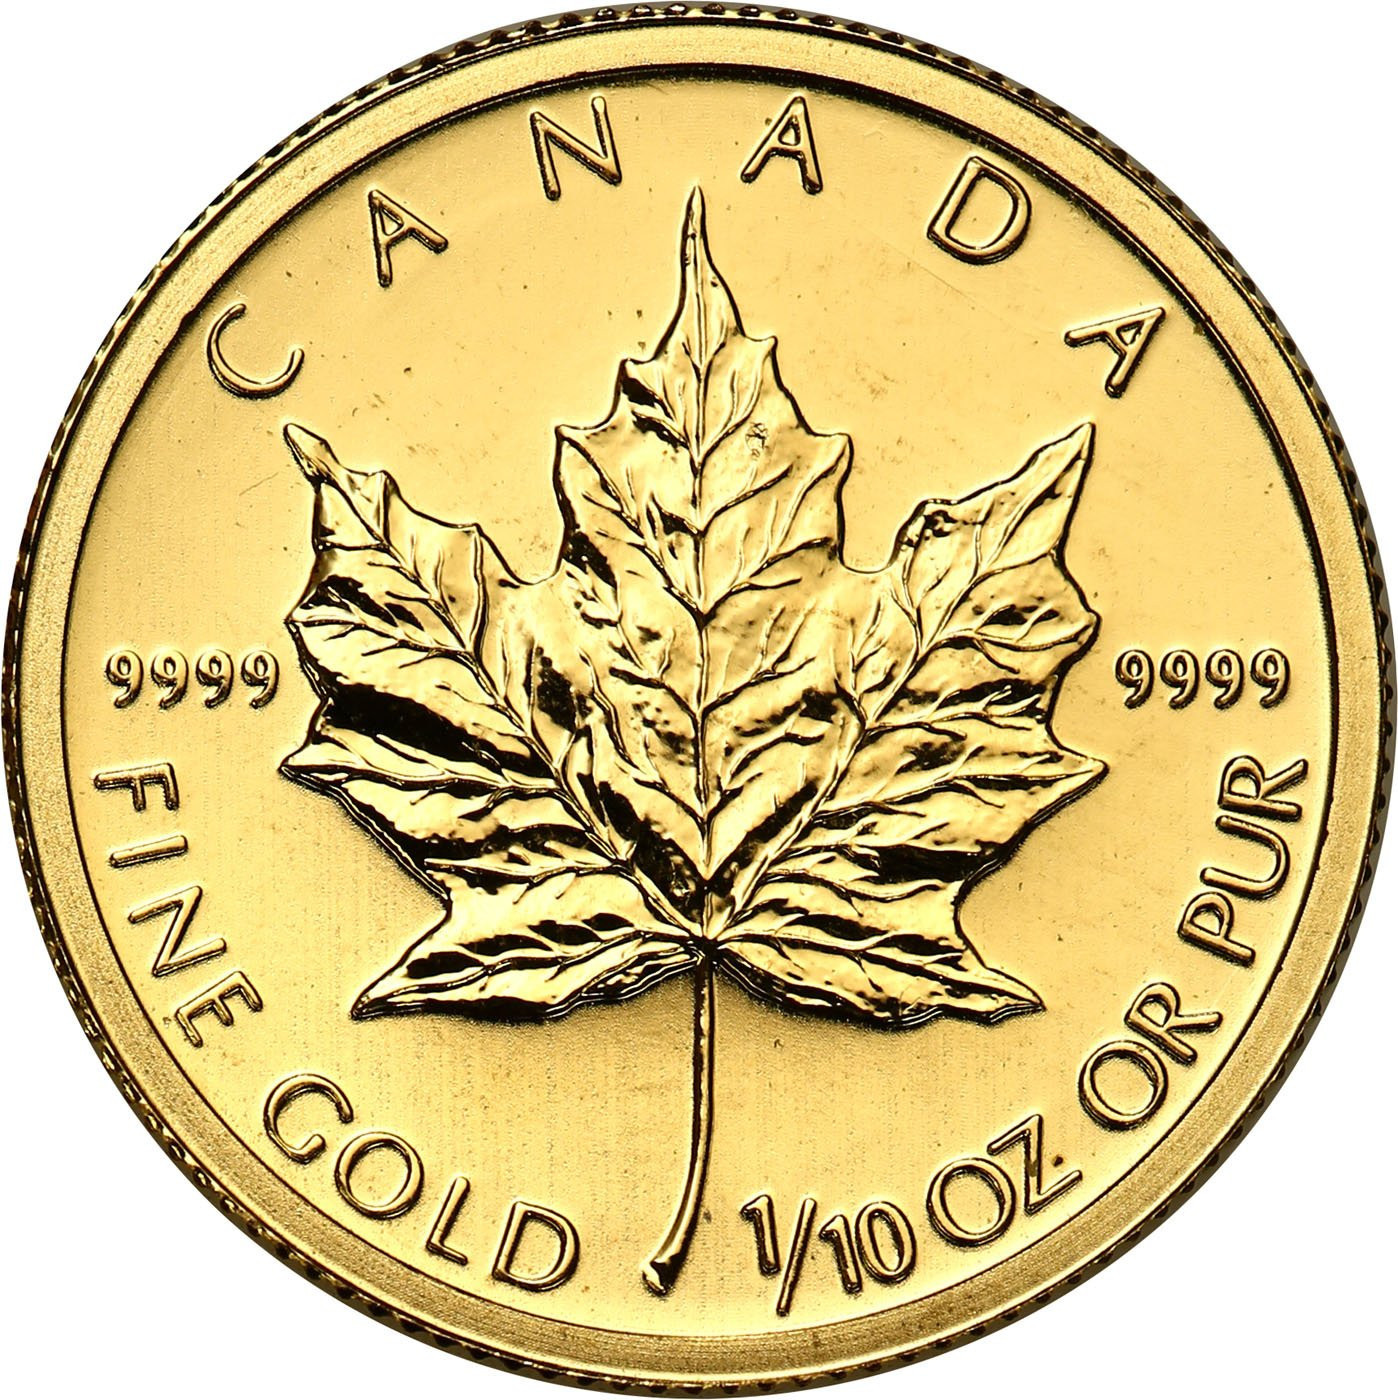 Kanada. Złoty Liść klonowy 5 dolarów 2010 - 1/10 uncji złota